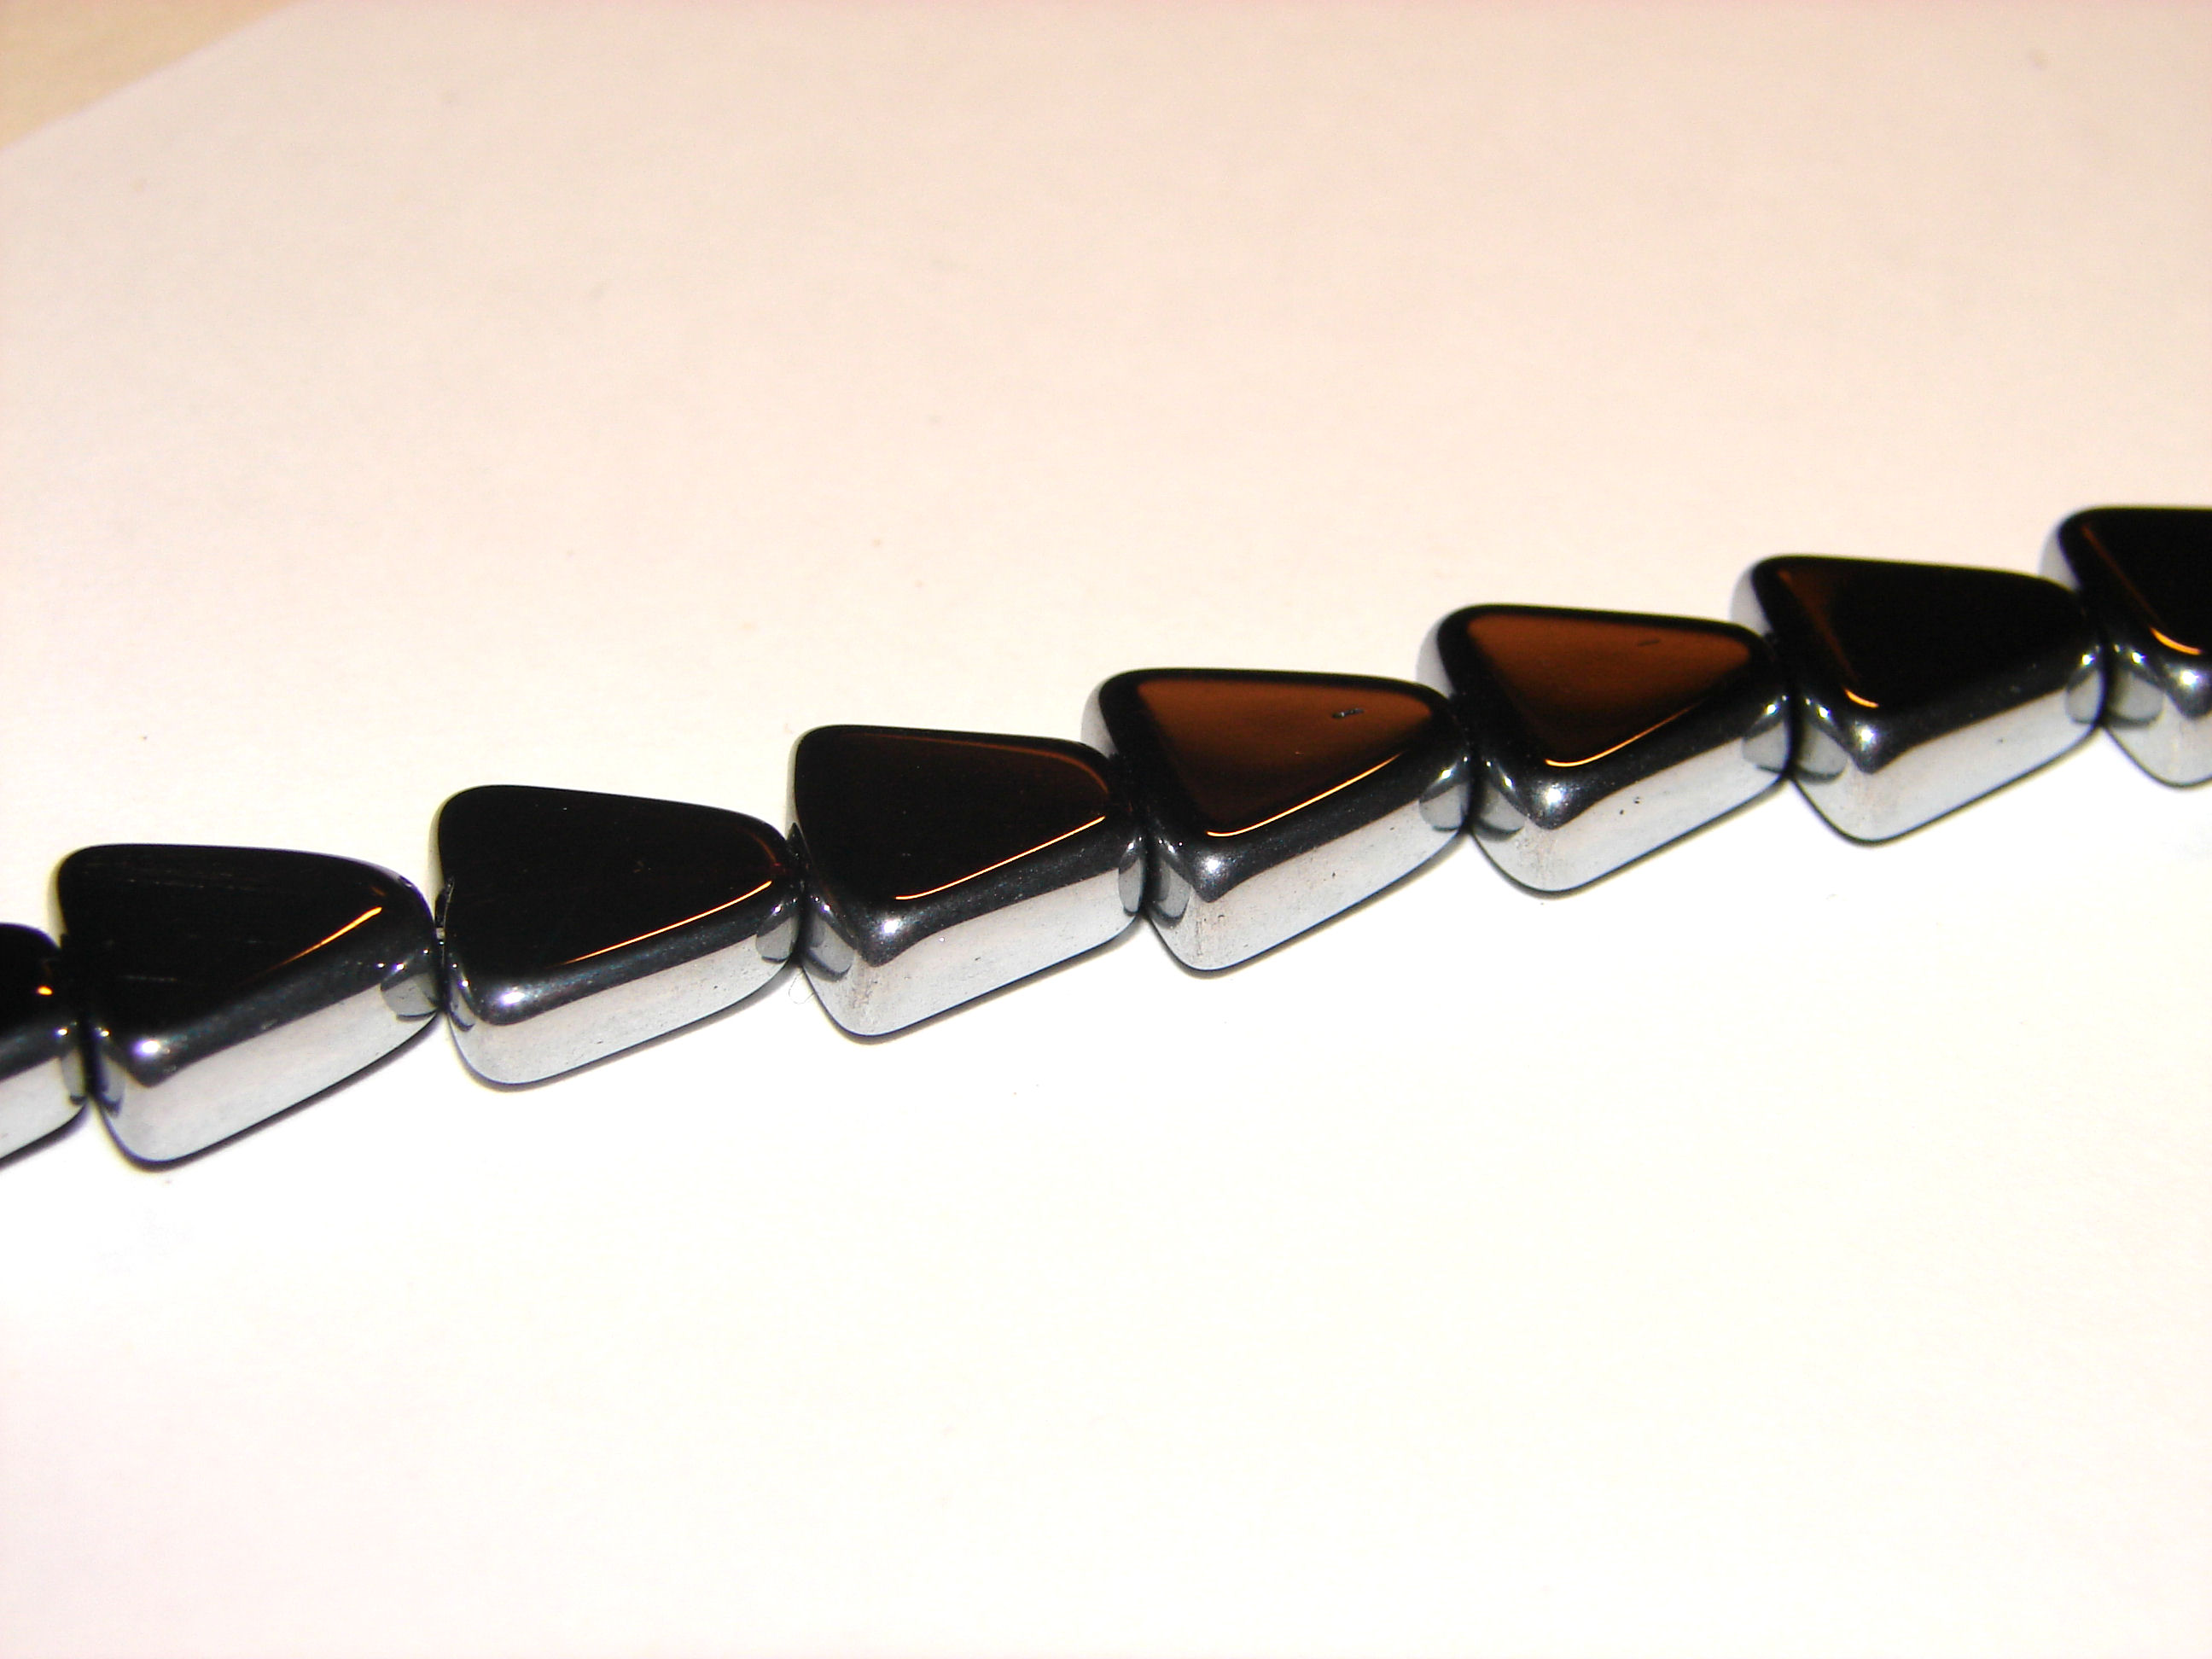 Glasperlen "Trapezium", schwarz/silber, 11mm, 10 Stk